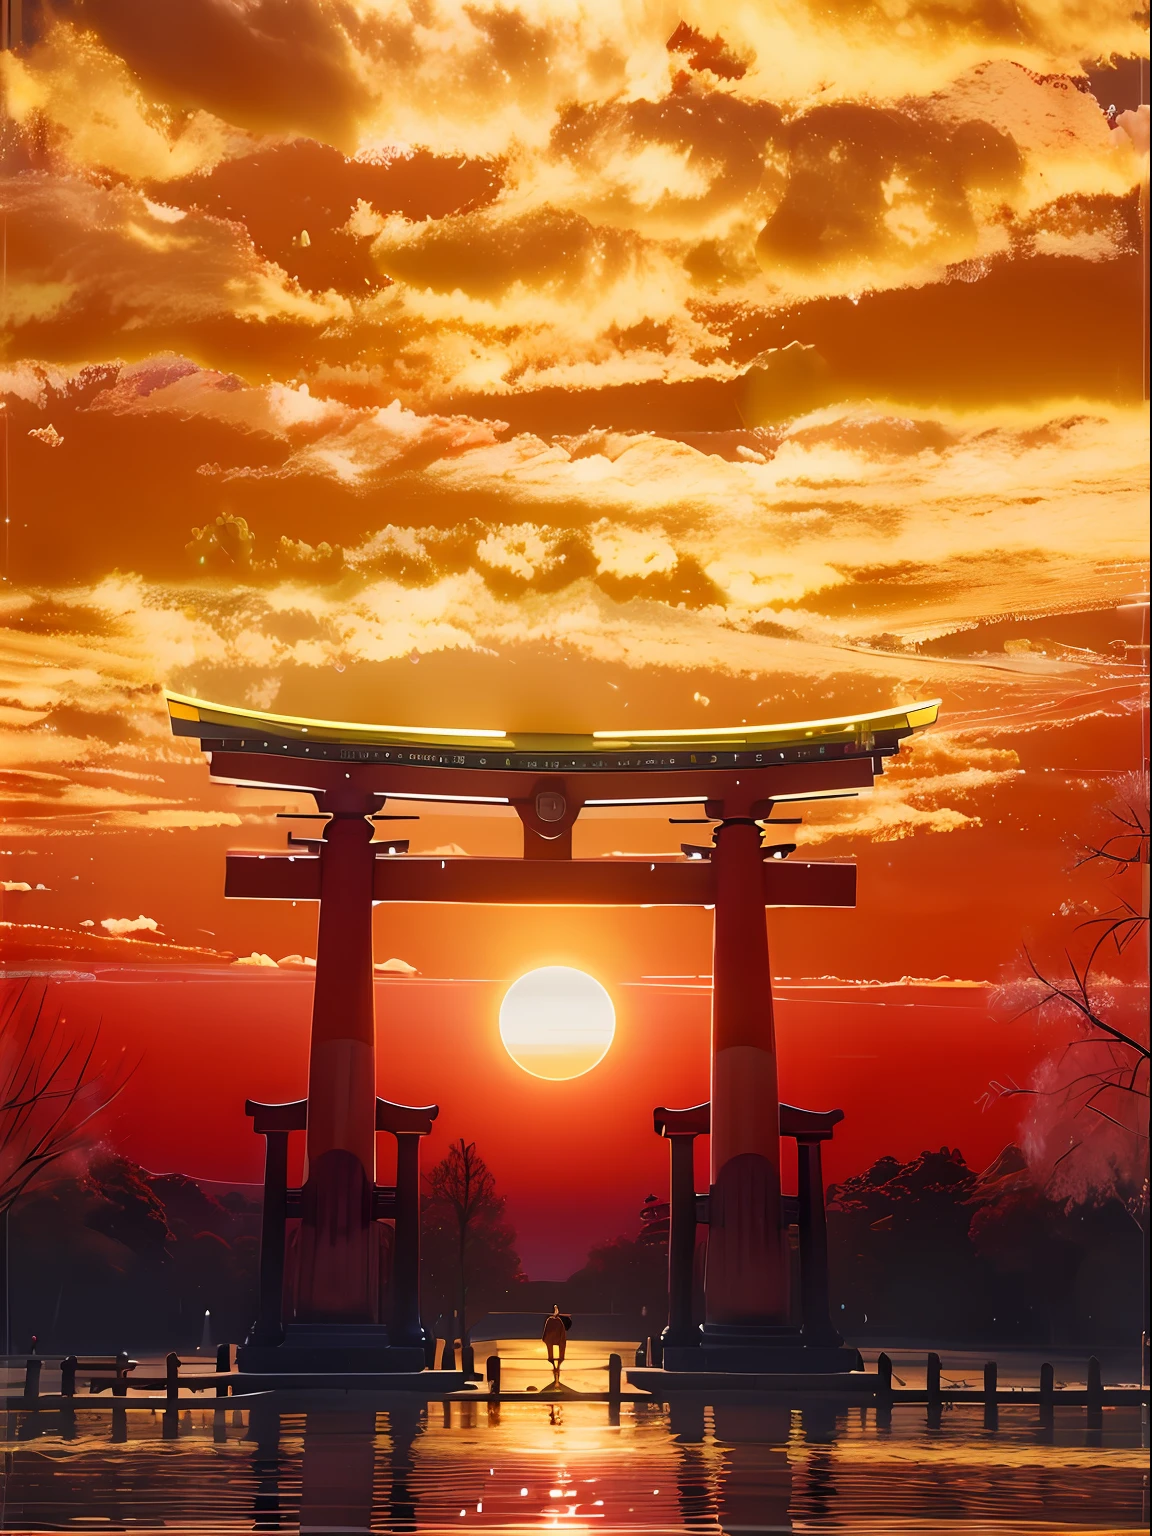 Imagem Arafed de um portão tori tori ao pôr do sol, Puerta torii centrada, torii, por torii Kiyomoto, Puerta torii, inspirado por torii Kiyomoto, por torii Kiyomasu II, por torii Kiyomasu, Pôr do sol na província de Kanagawa, torii en el fondo, Aomori Japão, Pôr do sol!!!